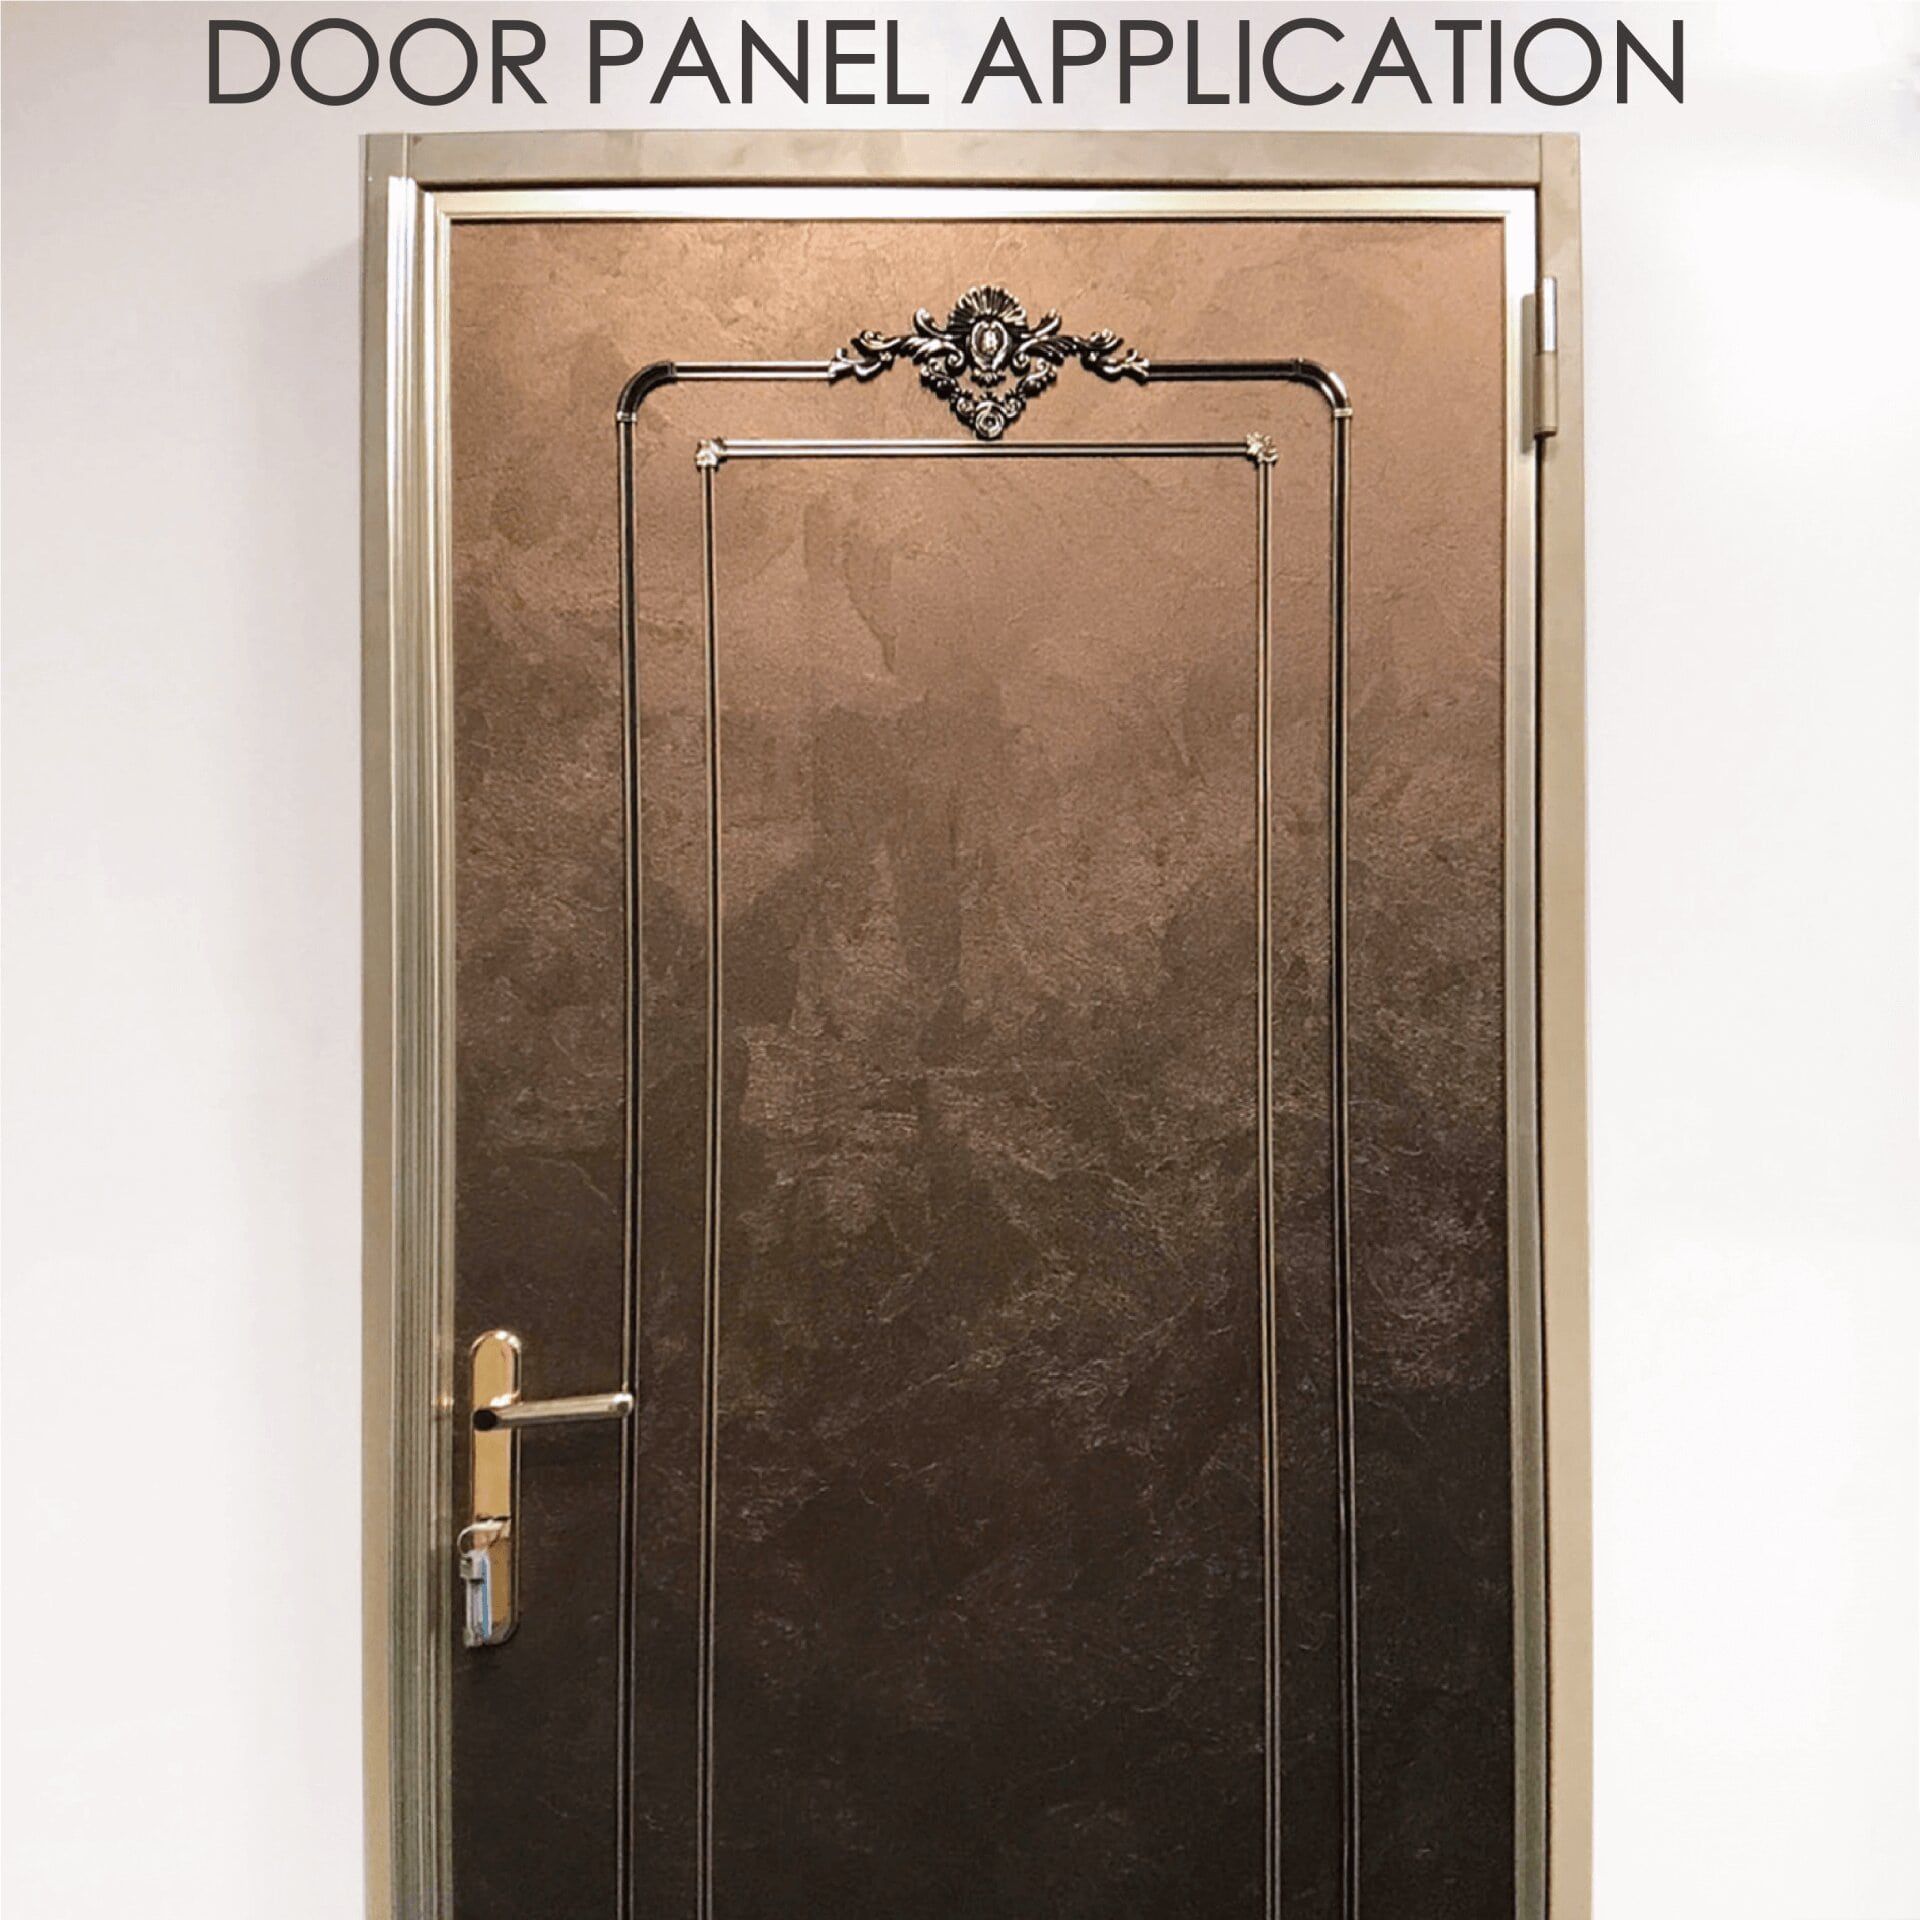 Substituir a porta de madeira por metal laminado pode aumentar a segurança e durabilidade.